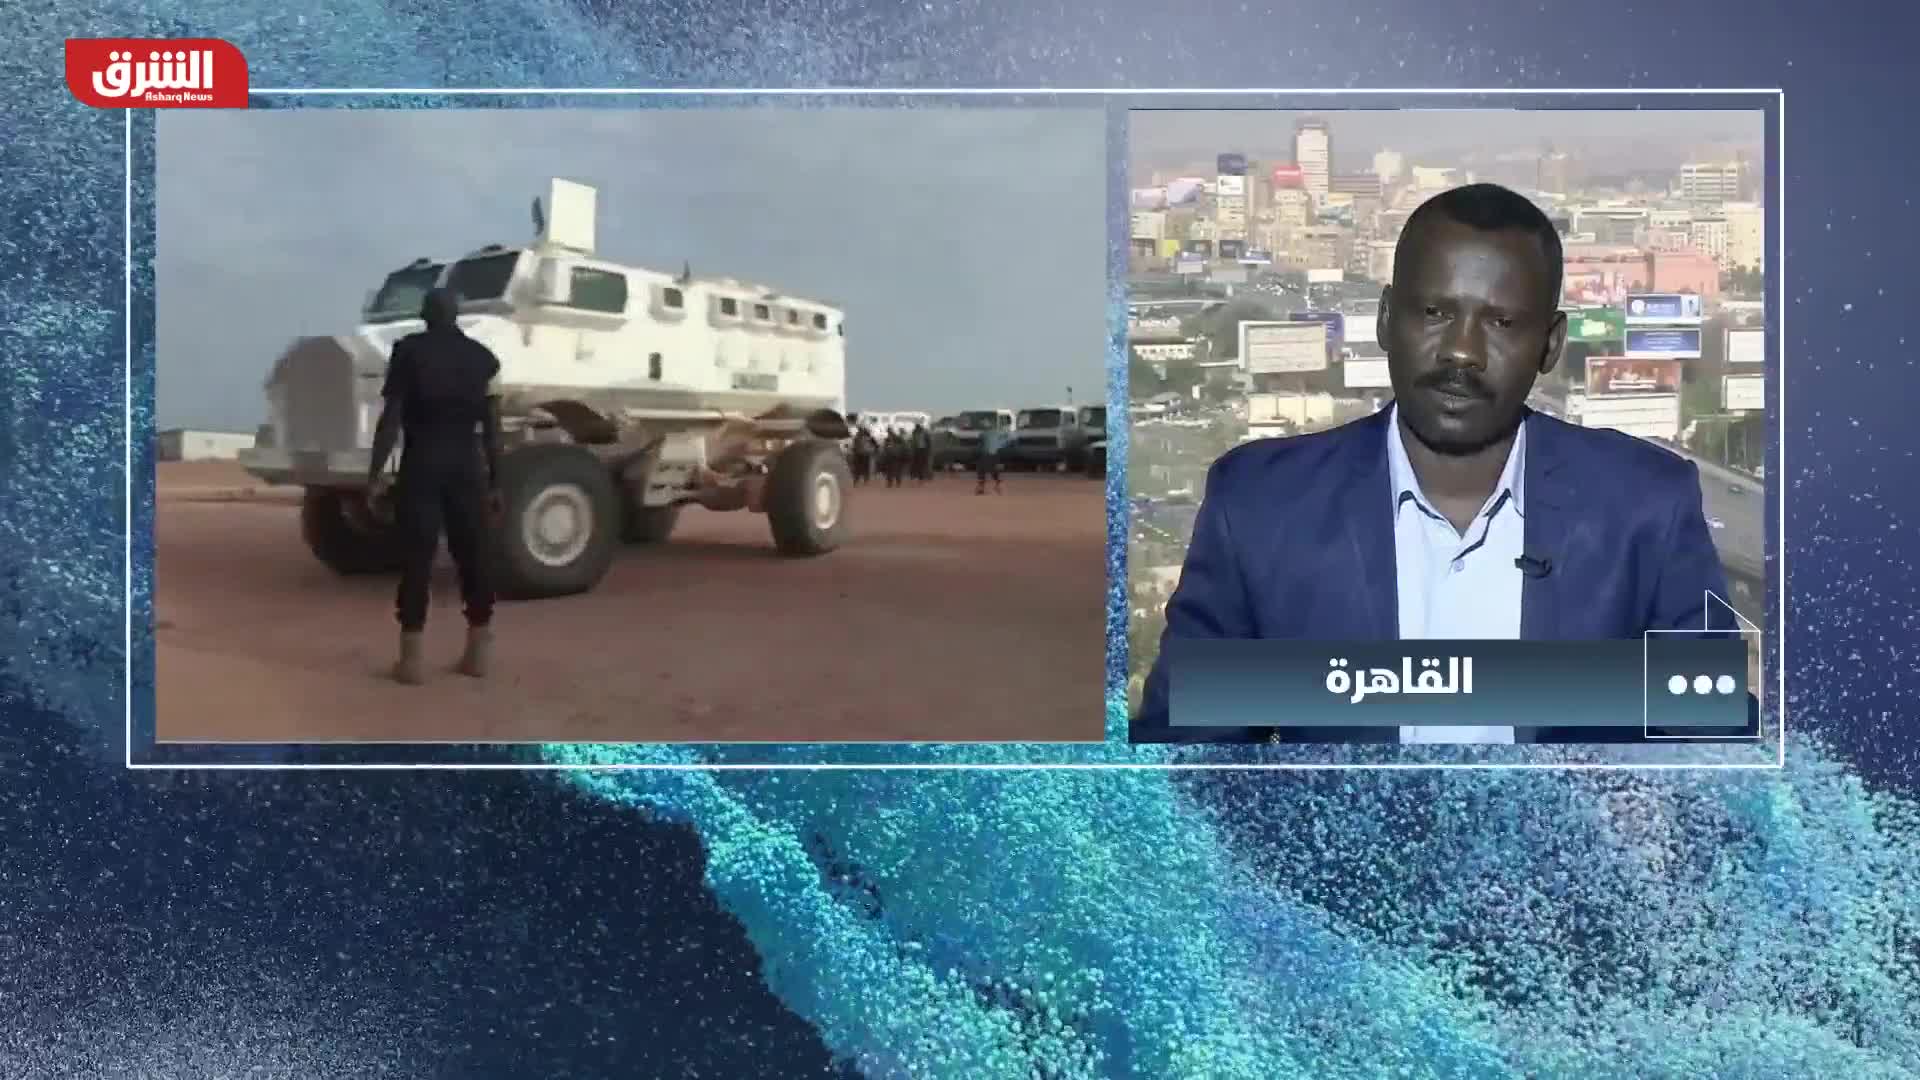  أسباب الصراع في دارفور